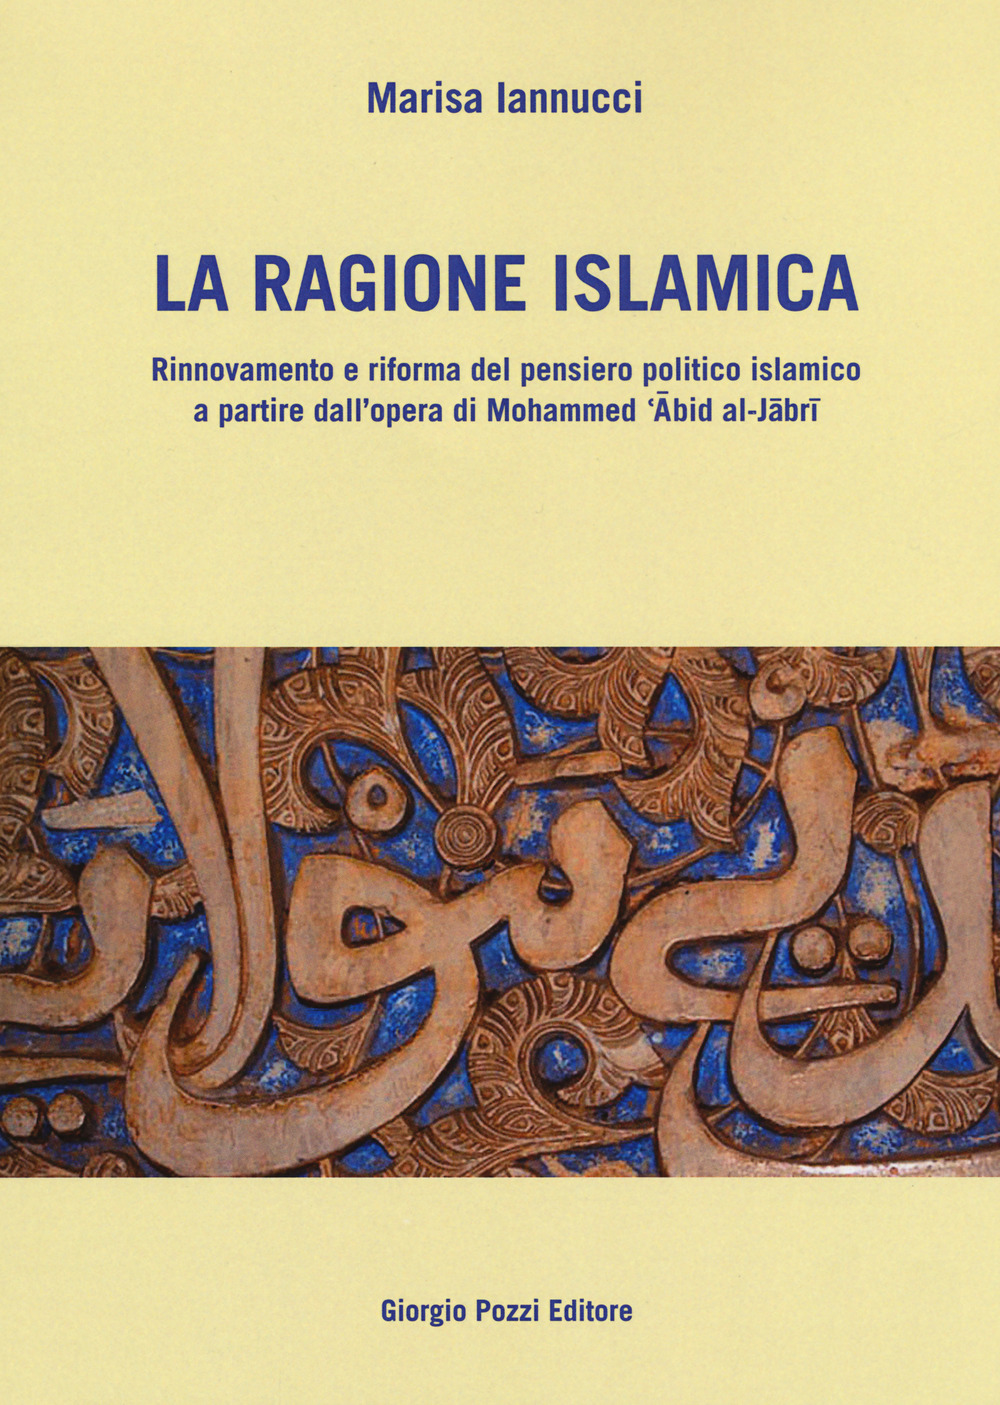 Image of La ragione islamica. Rinnovamento e riforma del pensiero politico islamico a partire dal'opera di Mohammed 'Abid al-Jabri